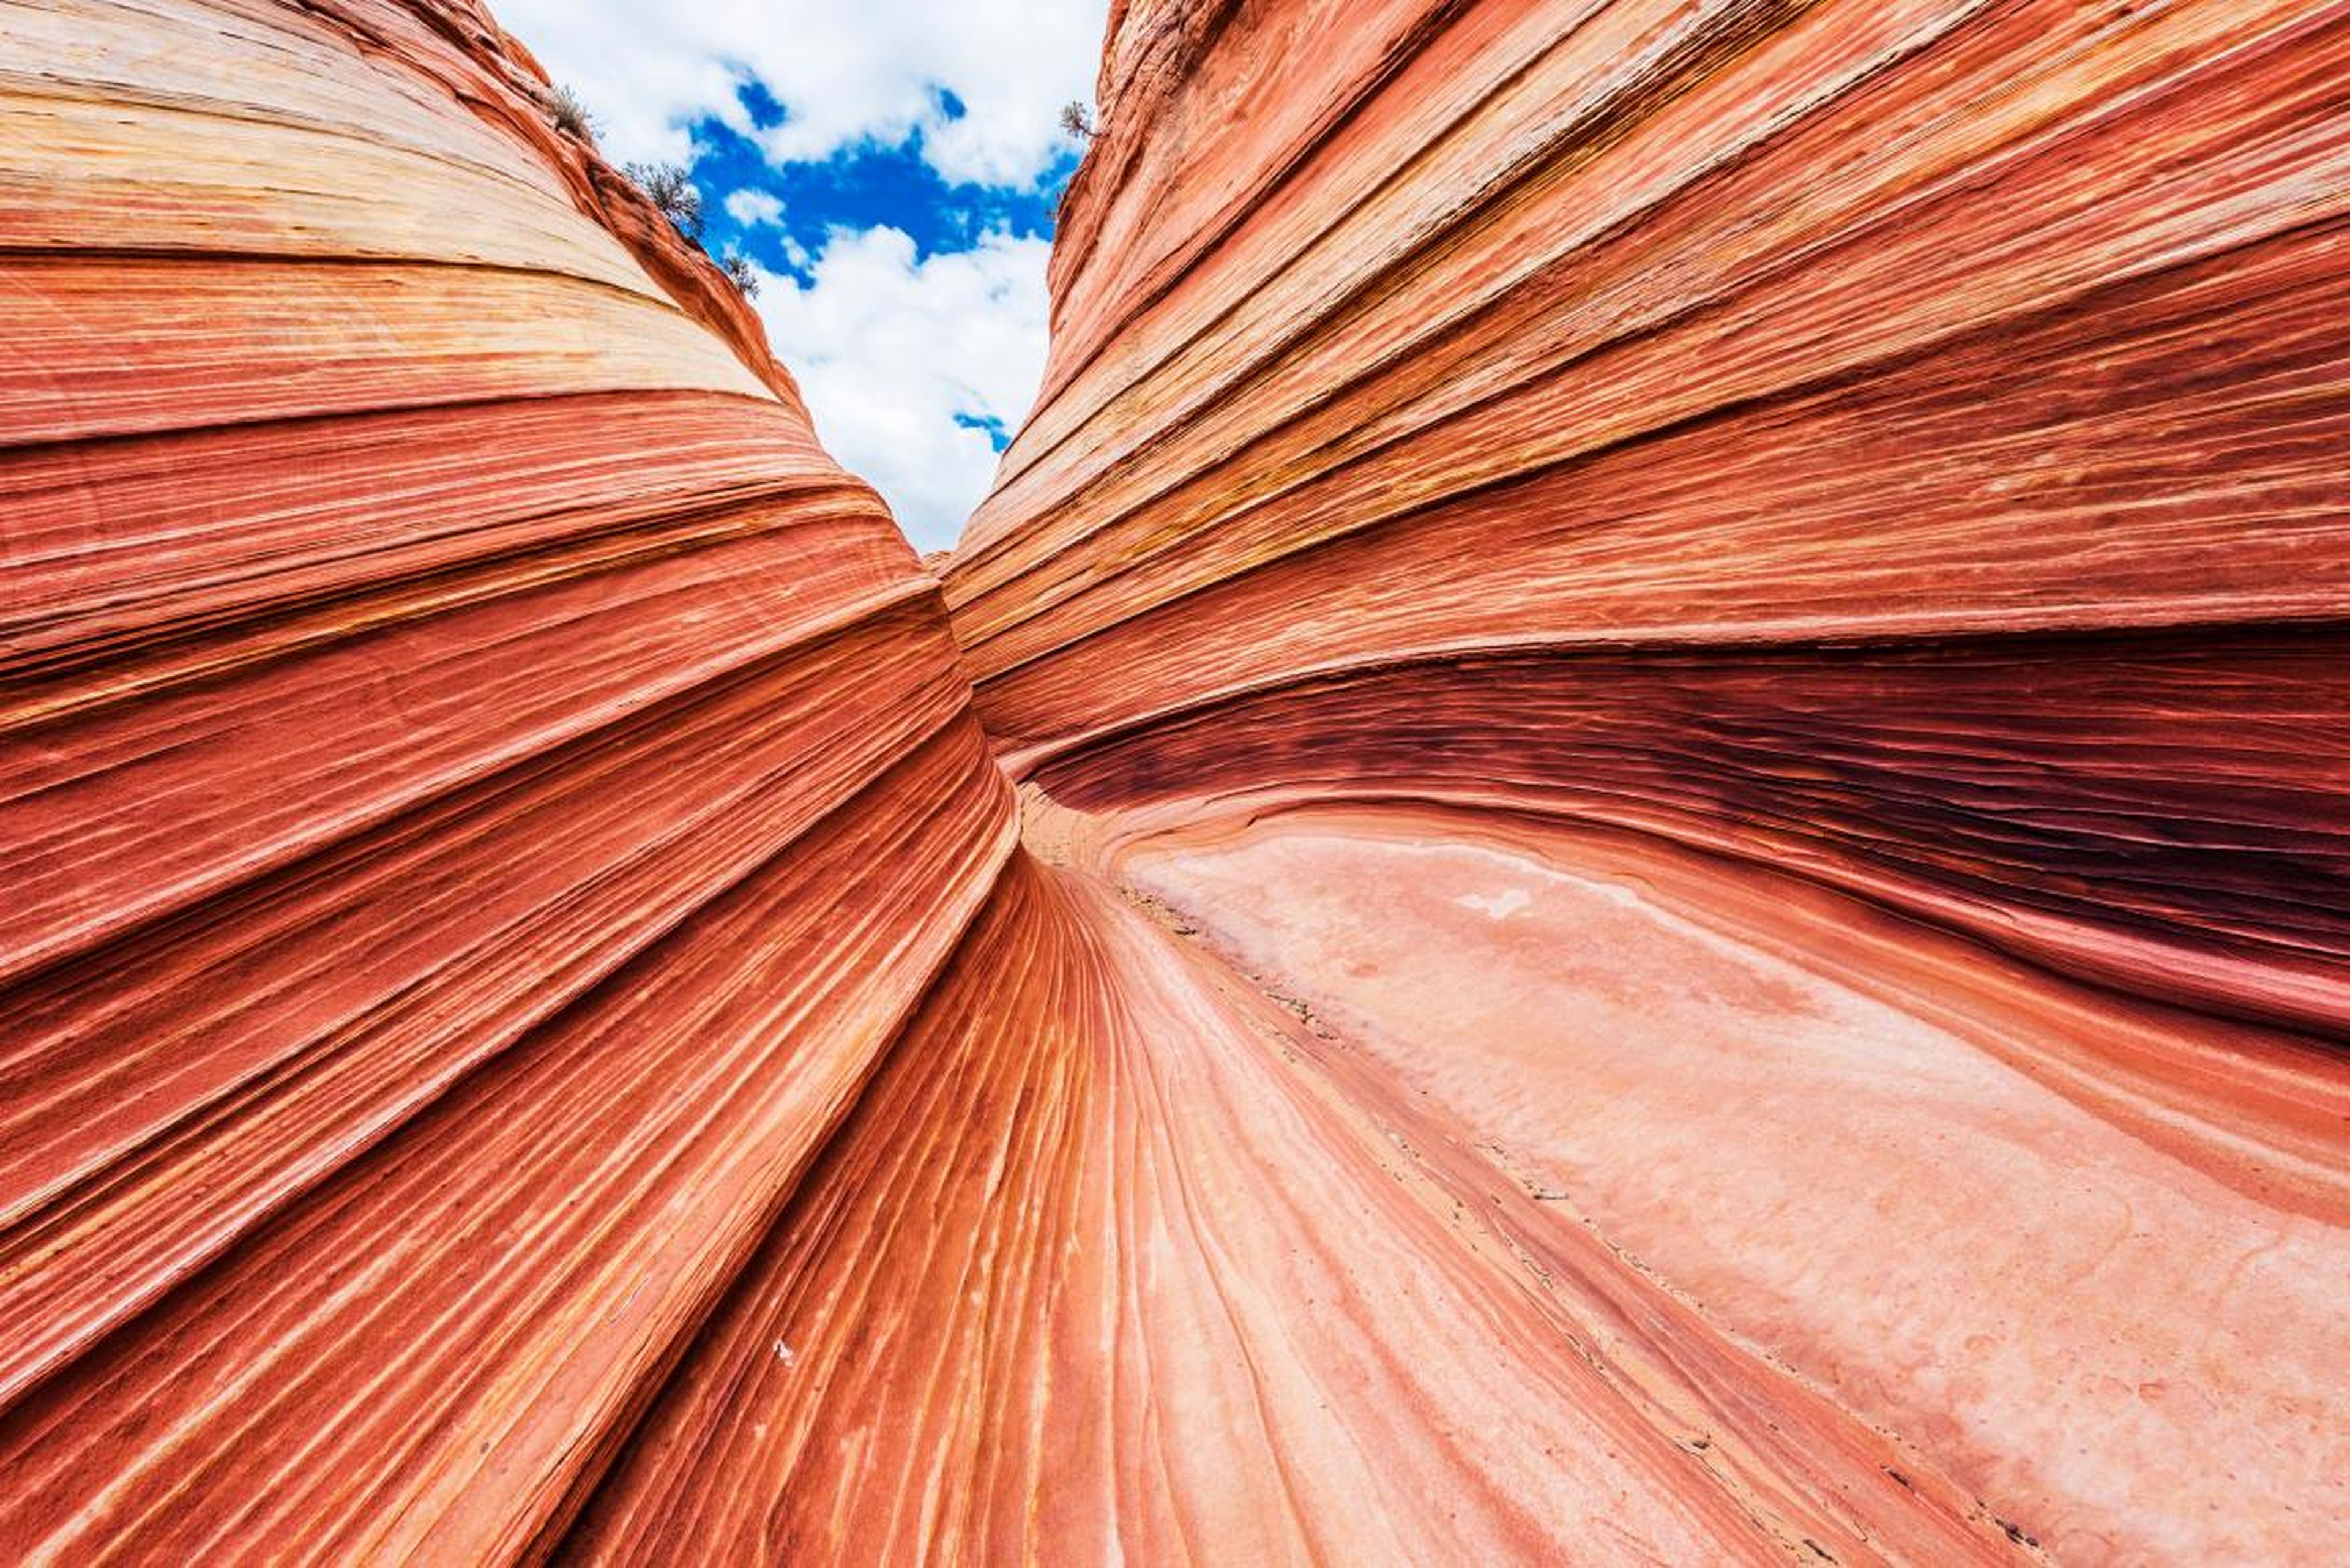 Los colores en esta formación rocosa son impresionantes.